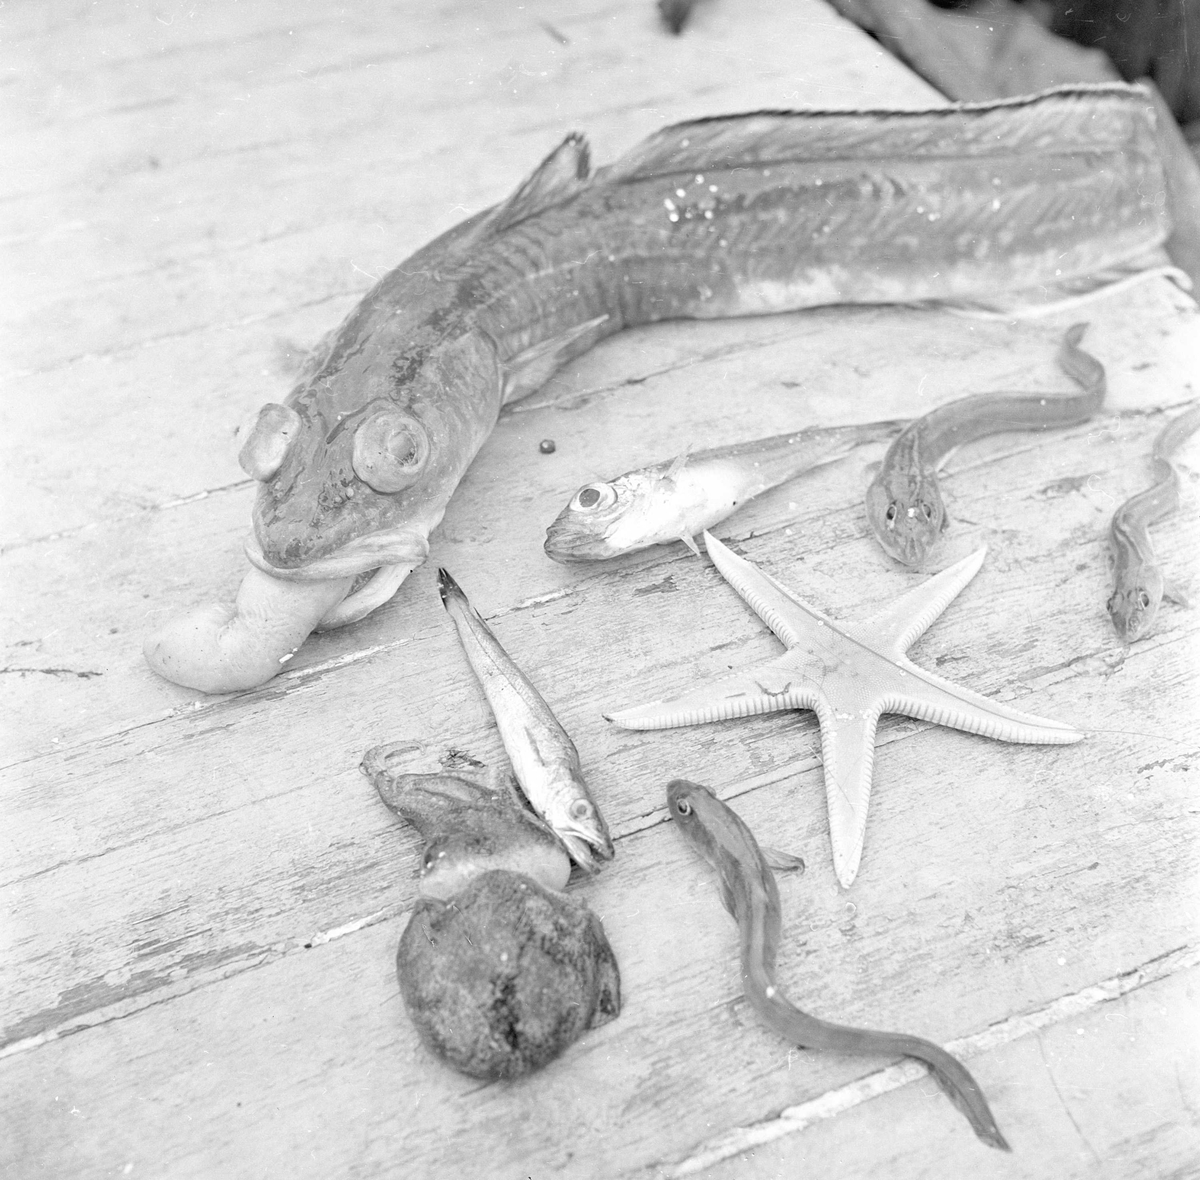 Son, 10.06.1961, reketråler, Kjøvangen, Oslofjord, utvalg av sjødyr som har gått i reketrålen.